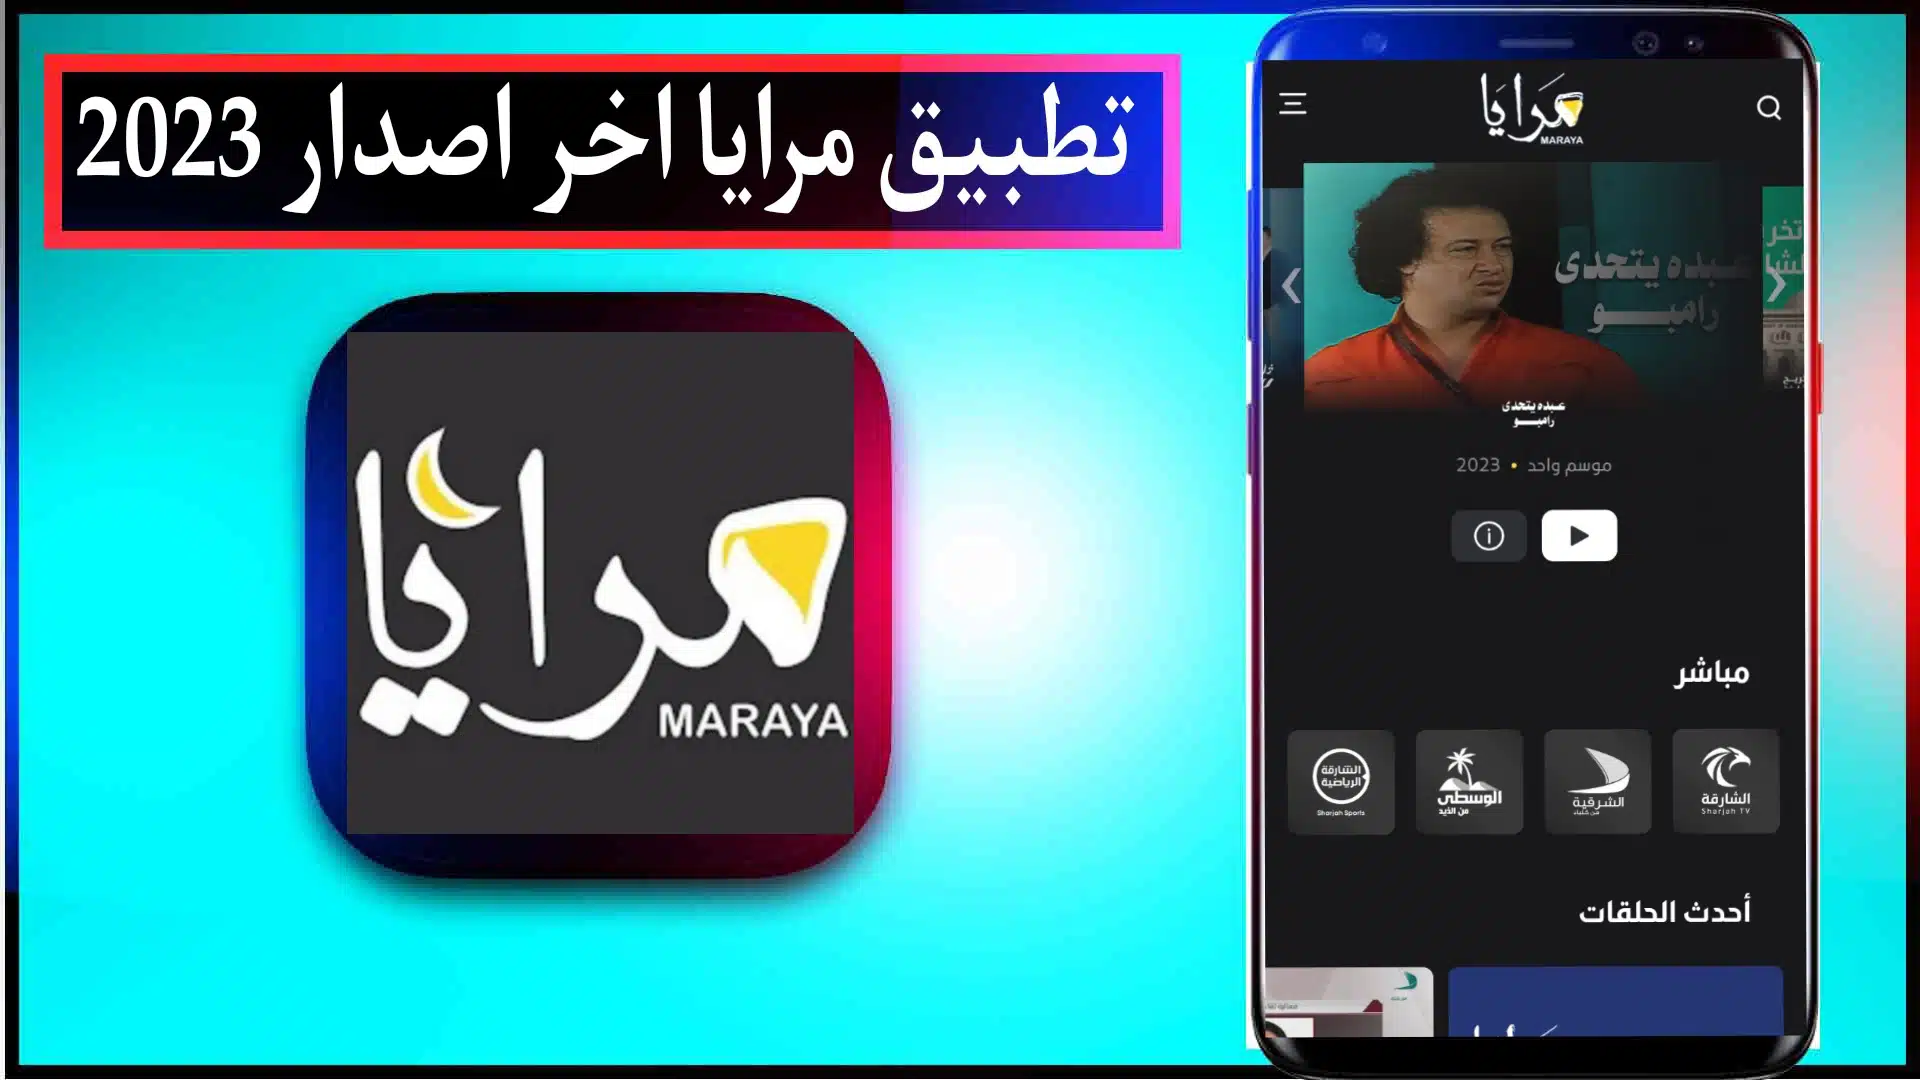 تحميل تطبيق مرايا maraya للايفون وللاندرويد 2024 مجانا اخر اصدار من ميديا فاير 2